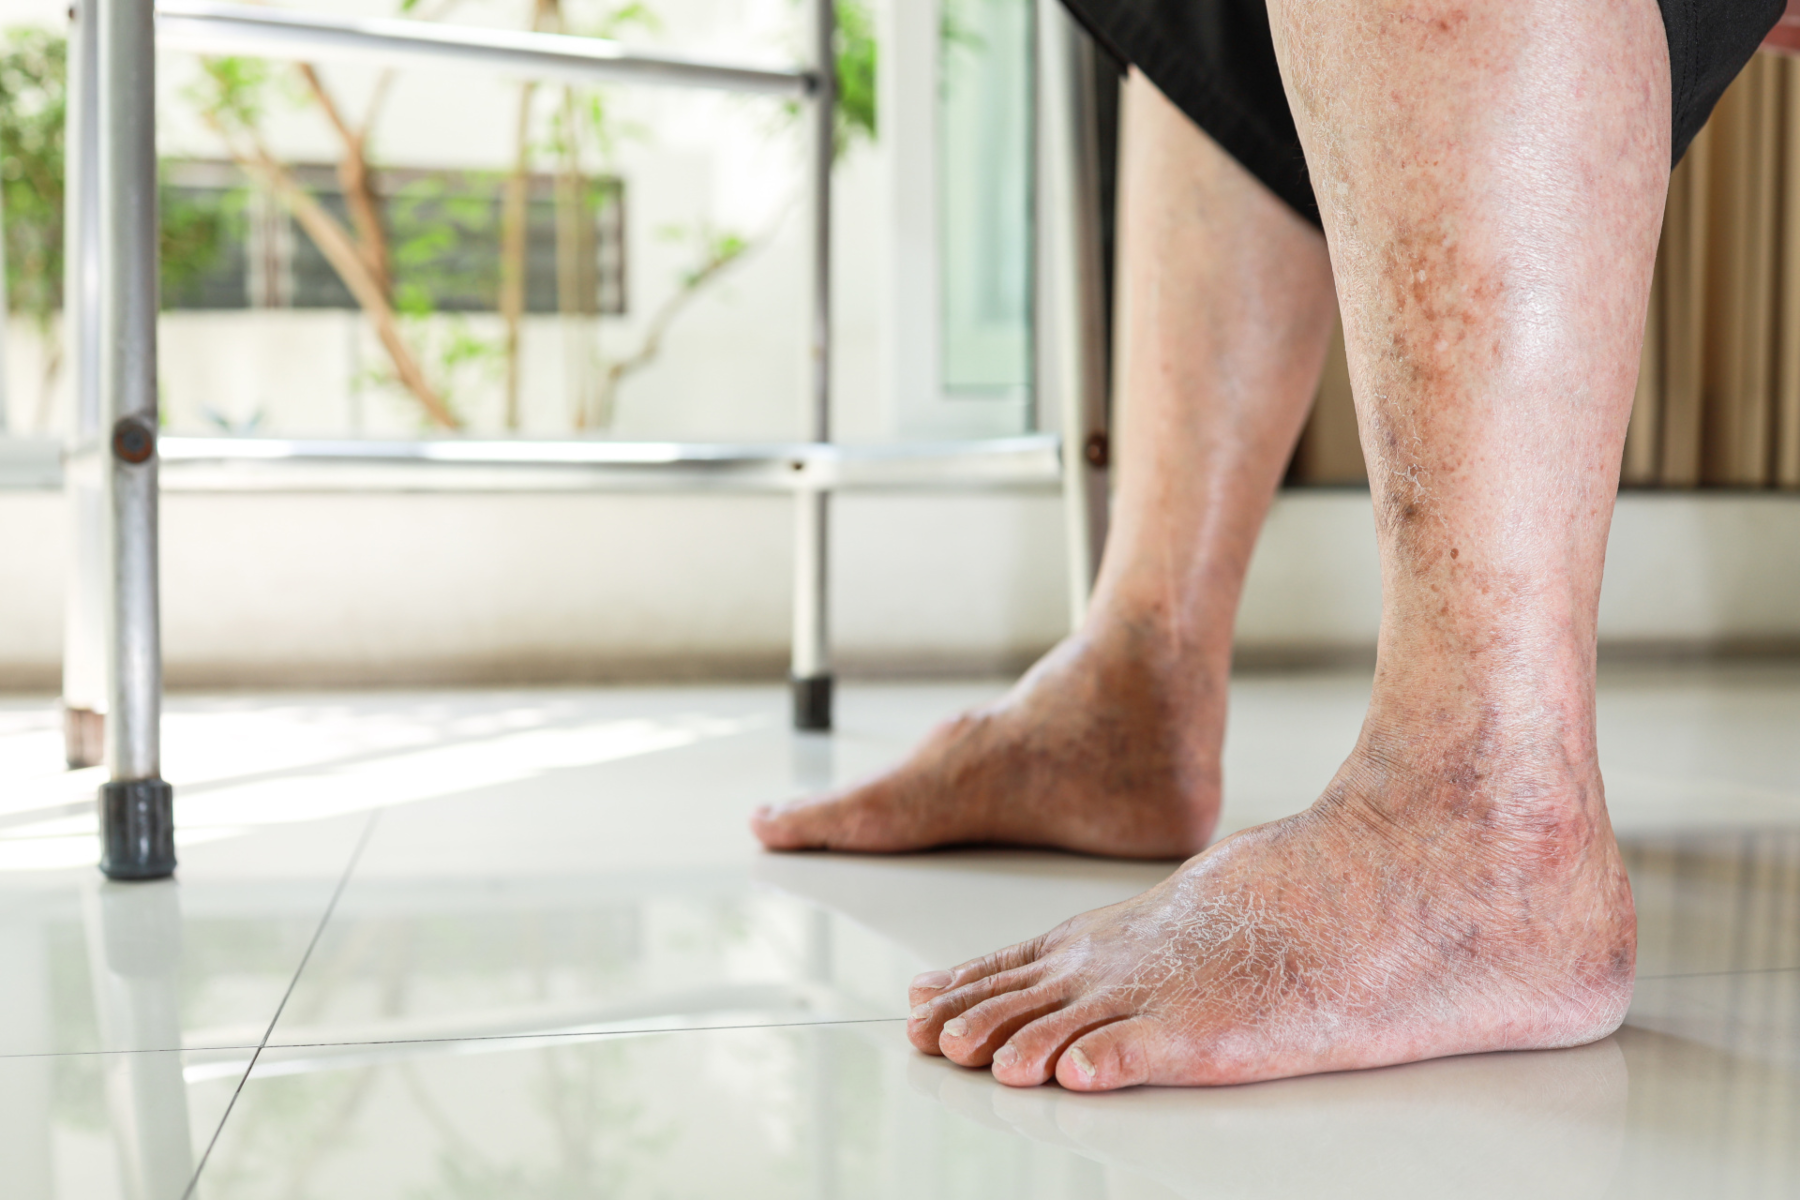 Φραγμένες αρτηρίες: Προειδοποιητικά σημάδια φραγμένων αρτηριών στα πόδια και τα πόδια τη νύχτα